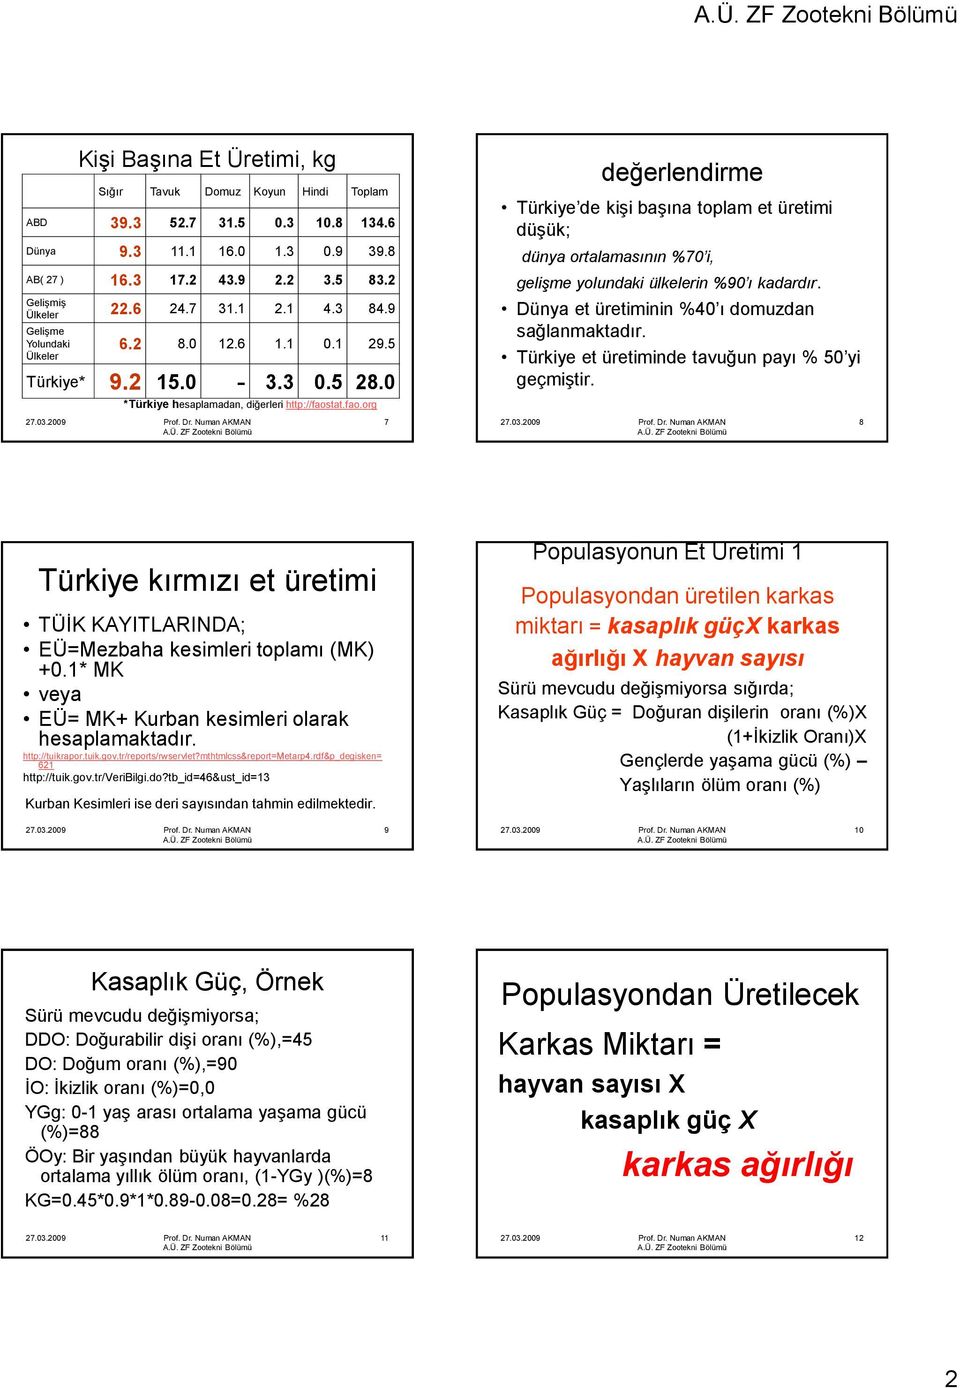 tat.fao.org 7 değerlendirme Türkiye de kiģi baģına toplam et üretimi düģük; dünya ortalamasının %70 i, gelişme yolundaki ülkelerin %90 ı kadardır. Dünya et üretiminin %40 ı domuzdan sağlanmaktadır.